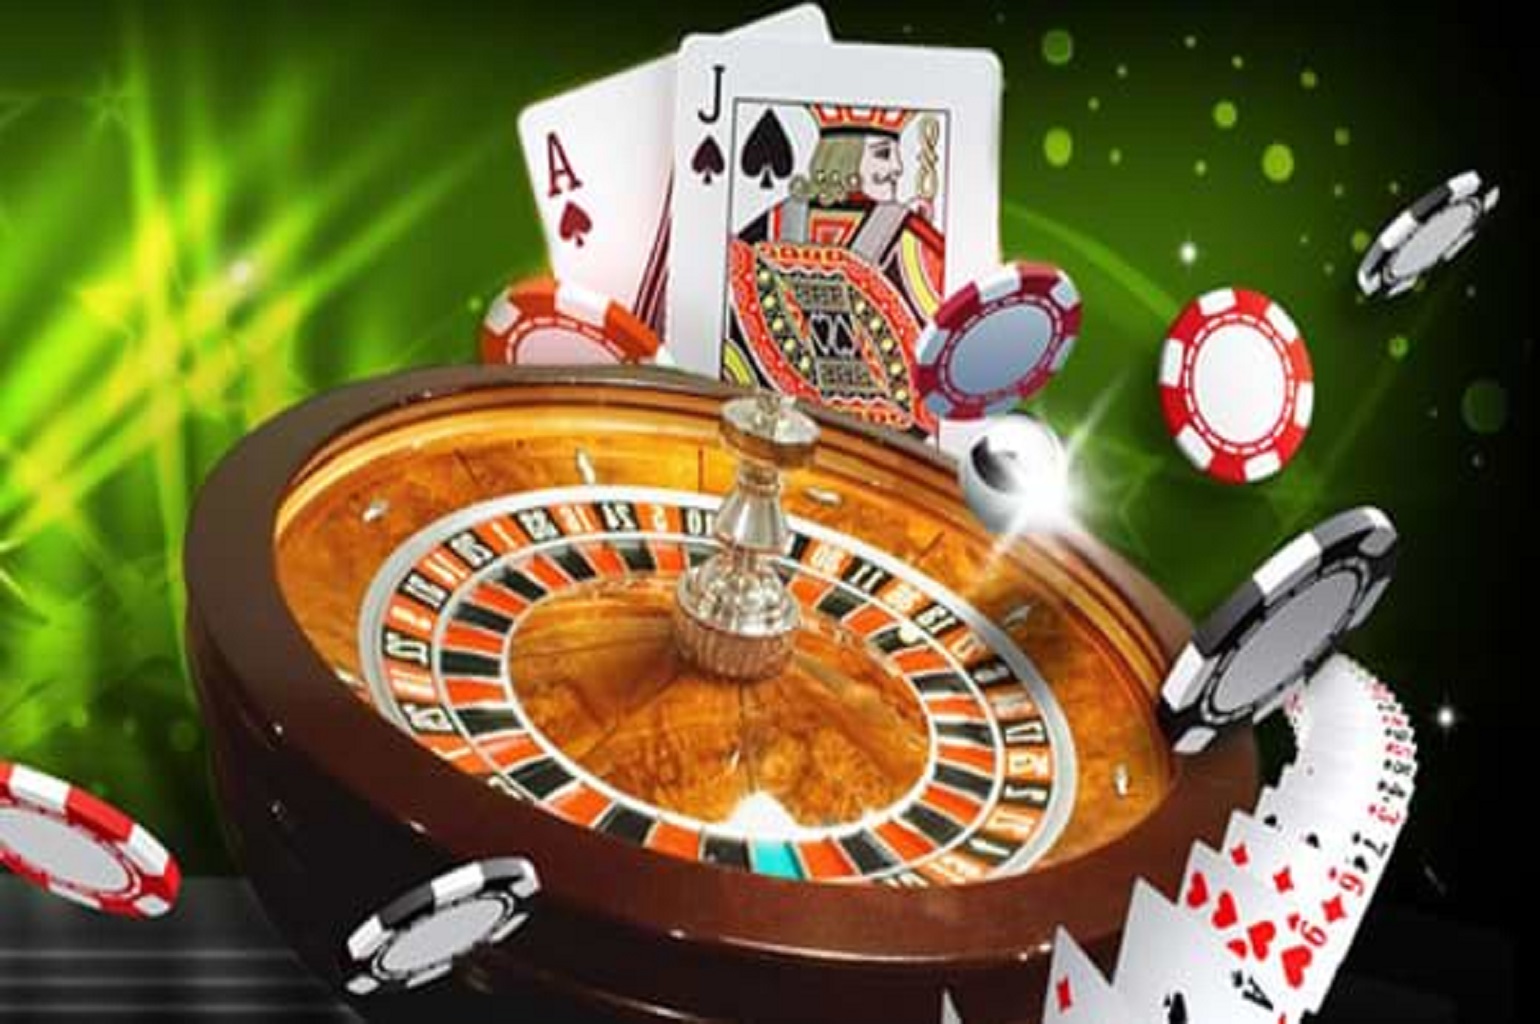 casino-games-online-uk